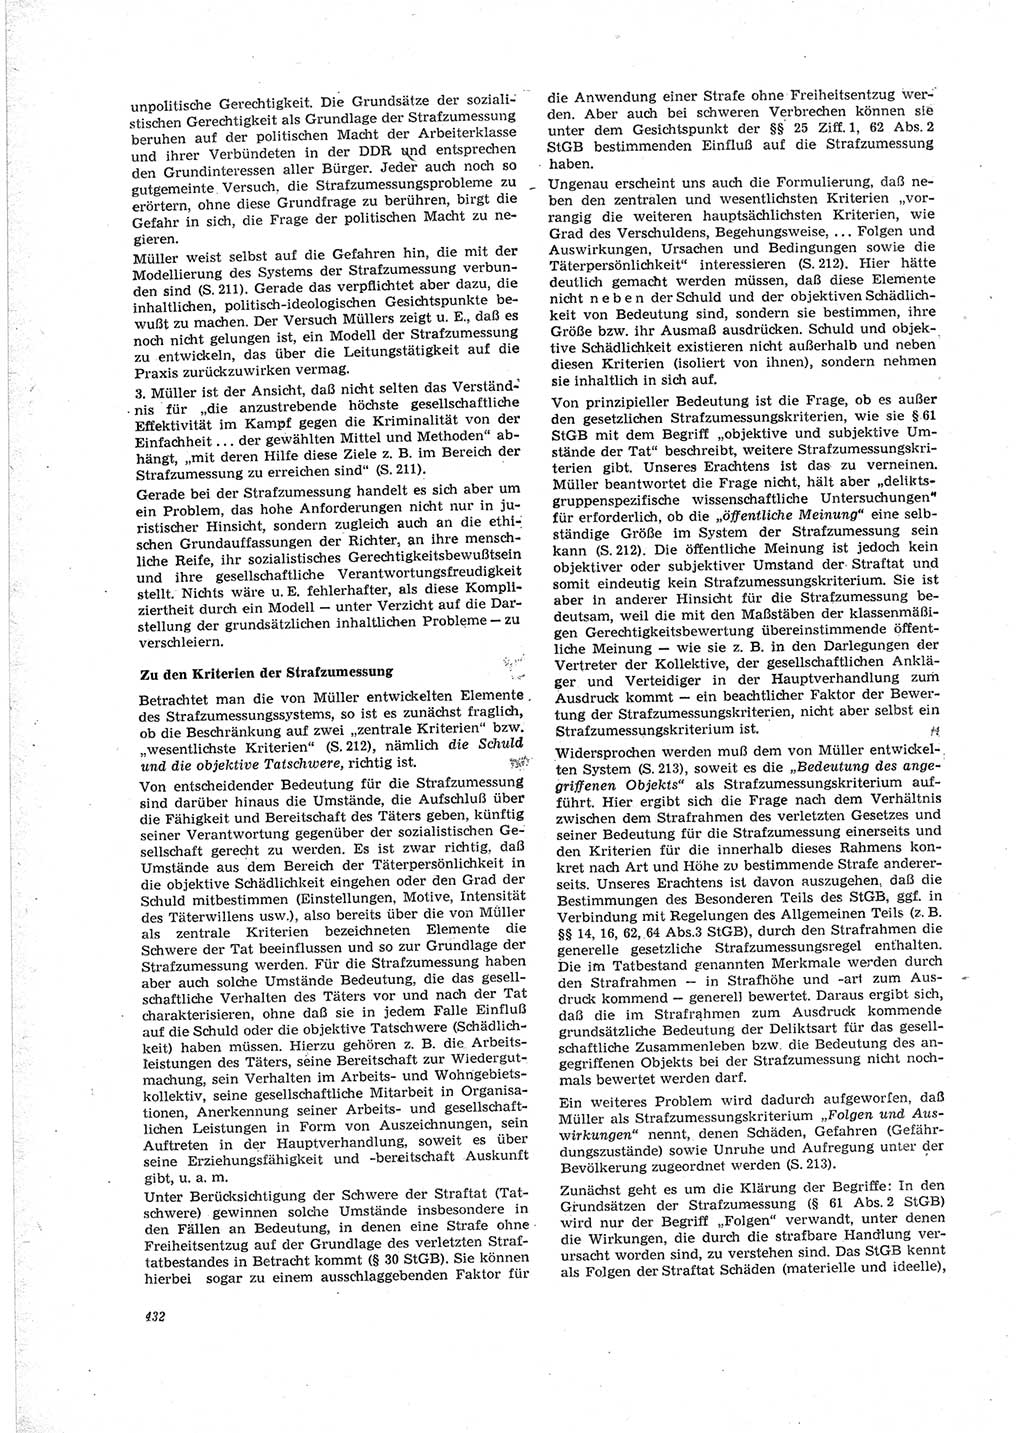 Neue Justiz (NJ), Zeitschrift für Recht und Rechtswissenschaft [Deutsche Demokratische Republik (DDR)], 23. Jahrgang 1969, Seite 432 (NJ DDR 1969, S. 432)